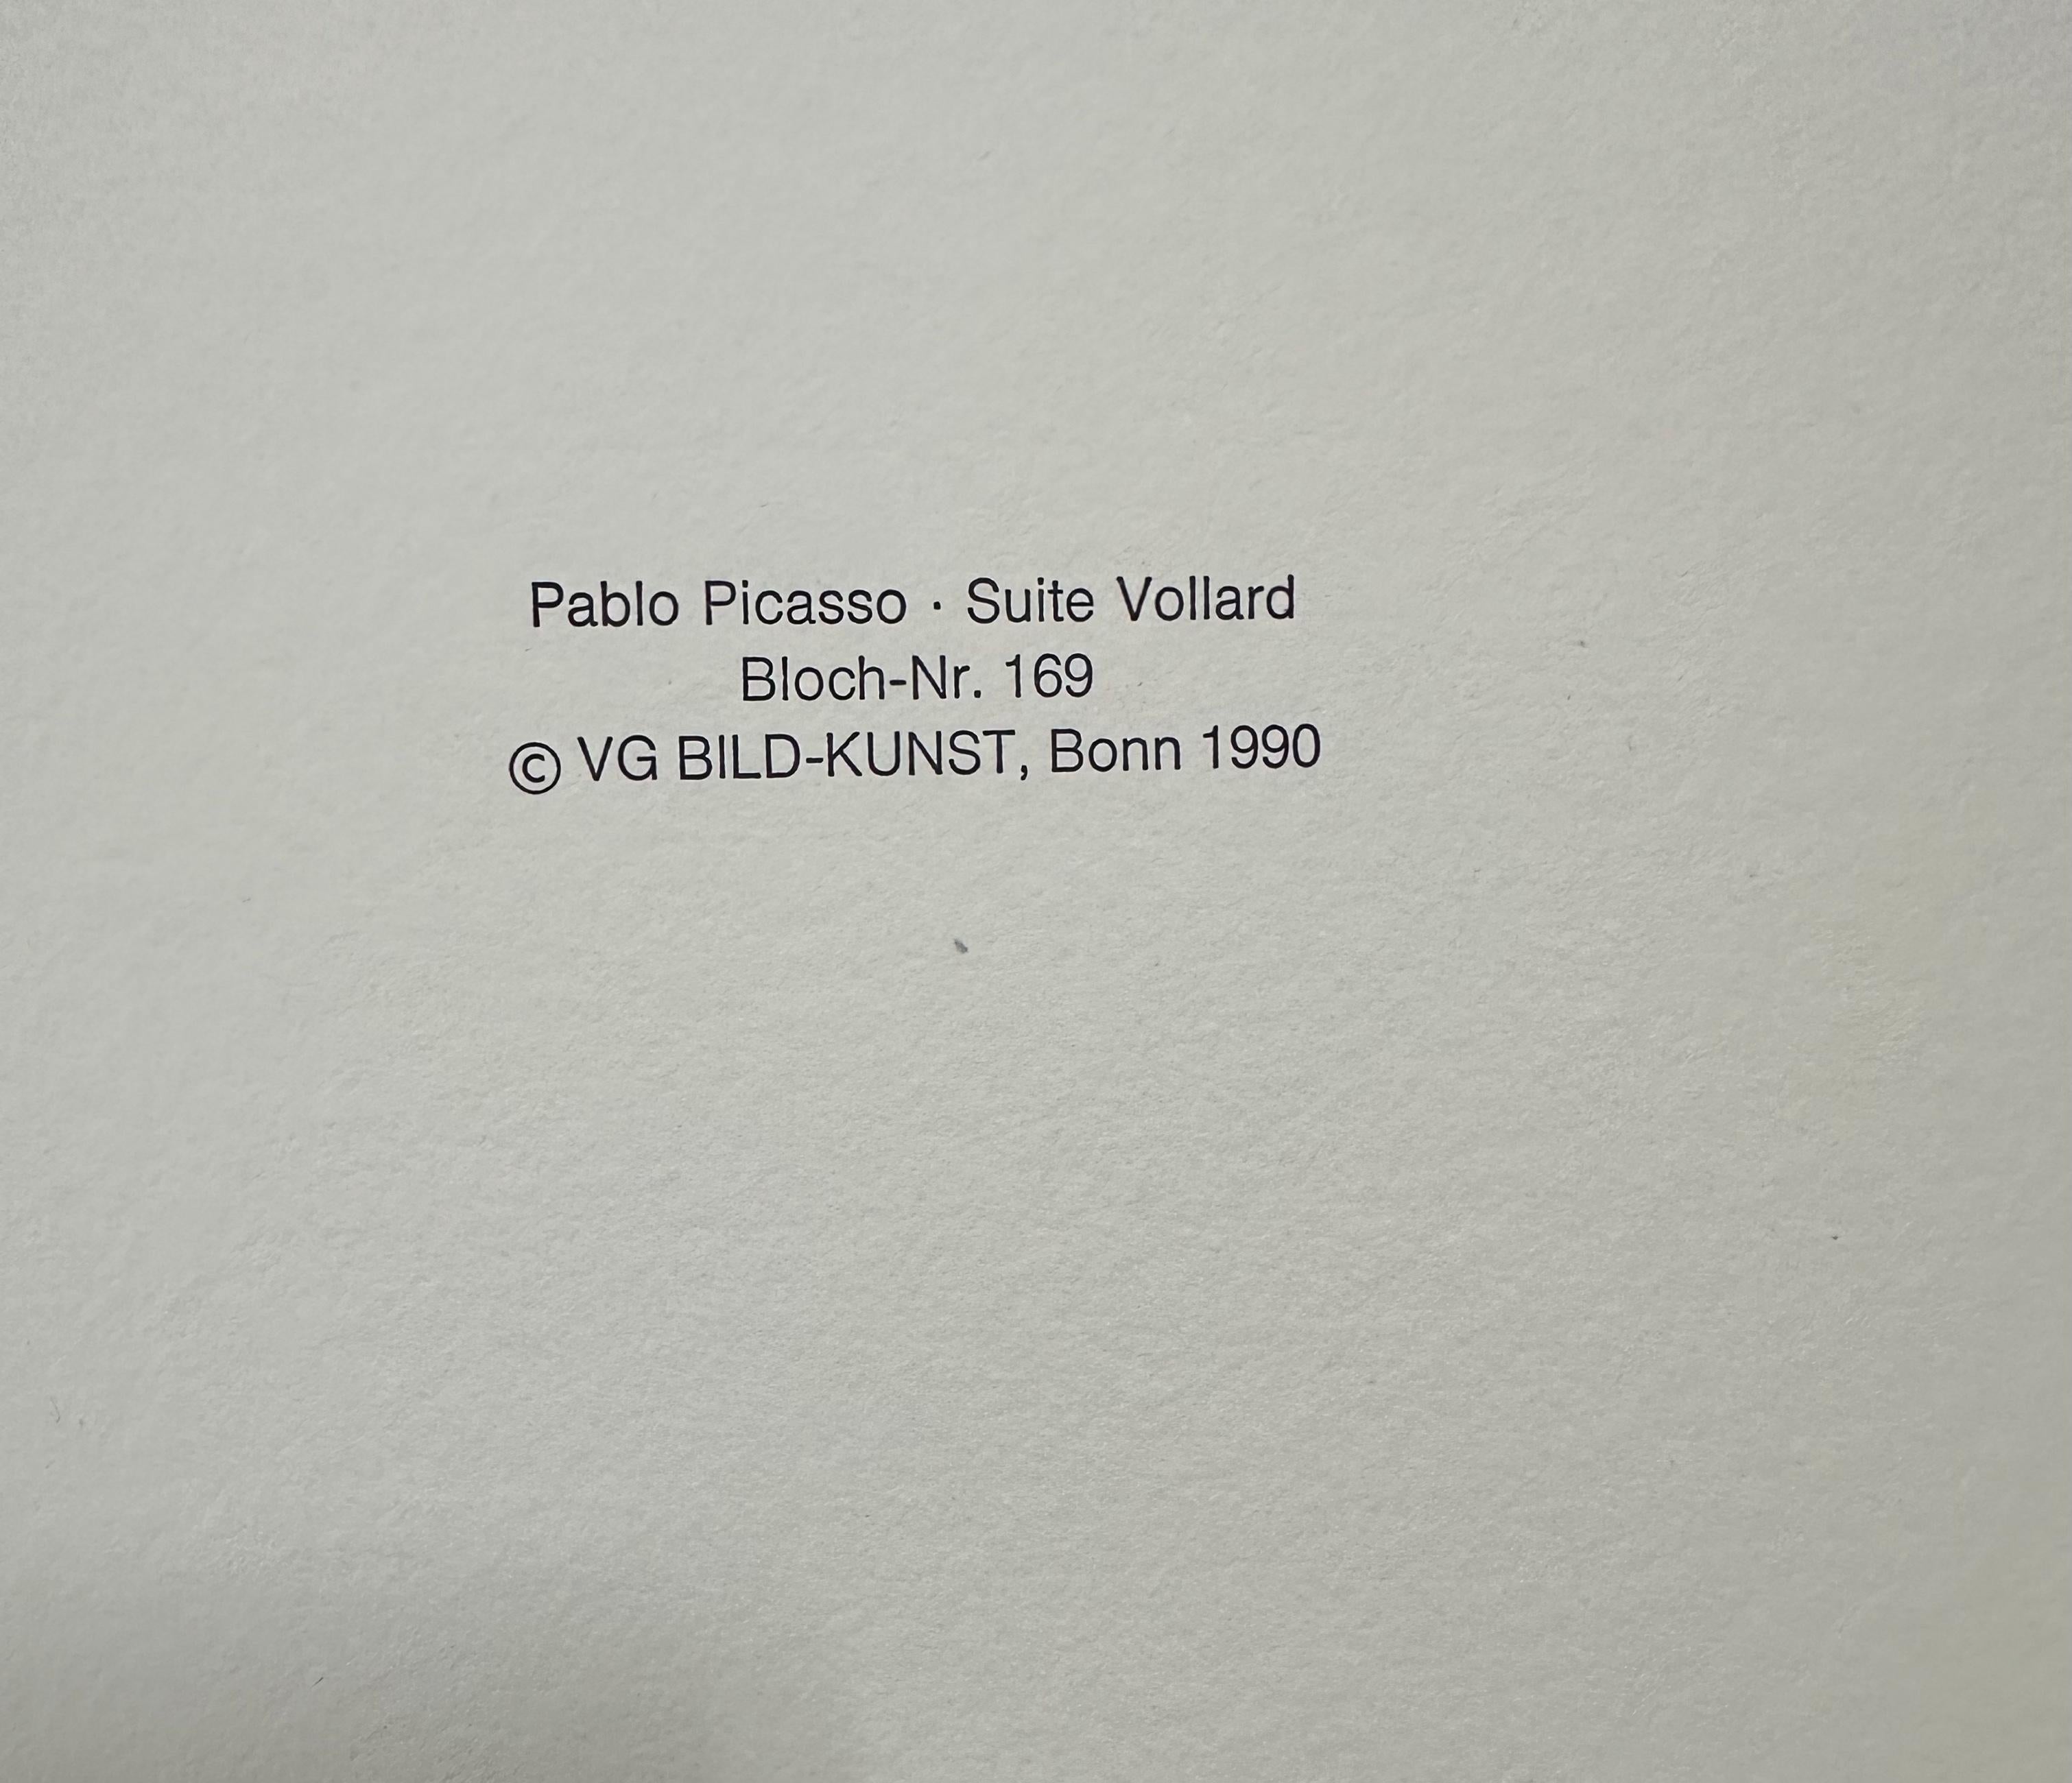 (after) Pablo Picasso
Le Repos du Sculpteur et la Sculpture surréaliste from La Suite Vollard
Bloch 169
Lithograph on Montval laid paper
1990
12.75 x 18 inches
Facsimile signature 
Numbered 157/300
Authorized for production in 1990 by the Picasso